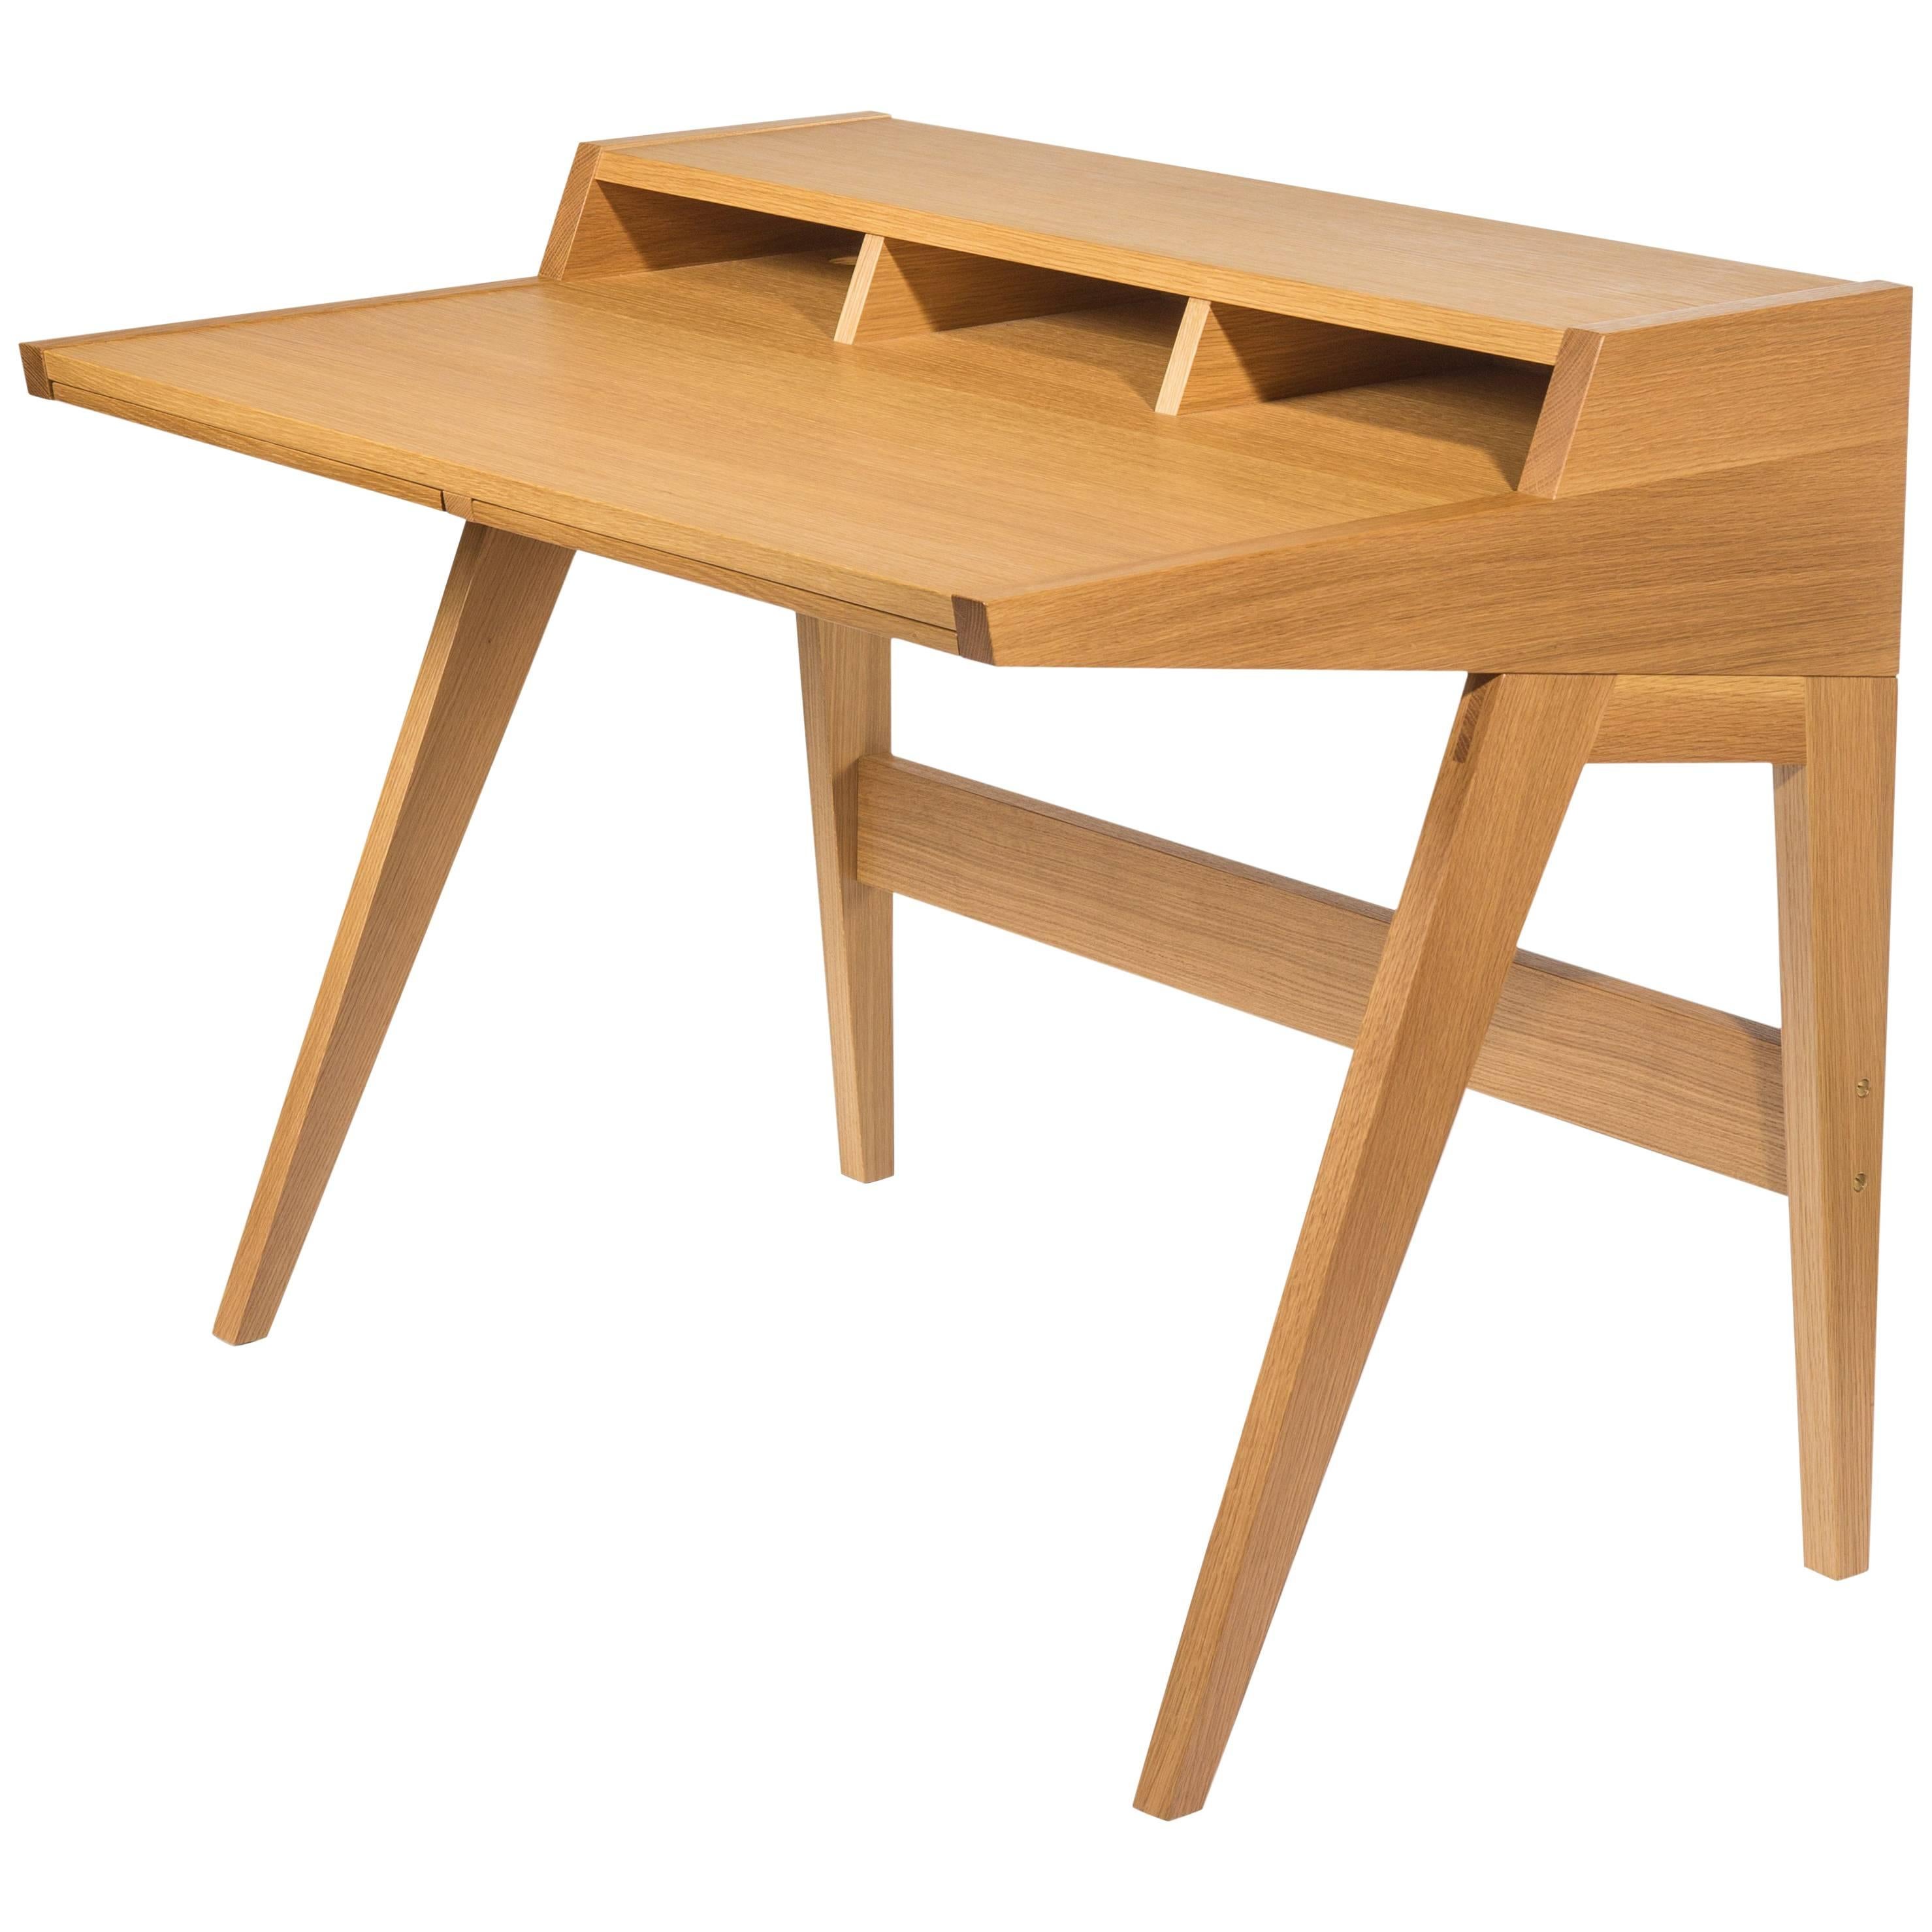 Phloem Studio Laura Desk, Handmade Modern Secretary Desk in Walnut or White Oak For Sale